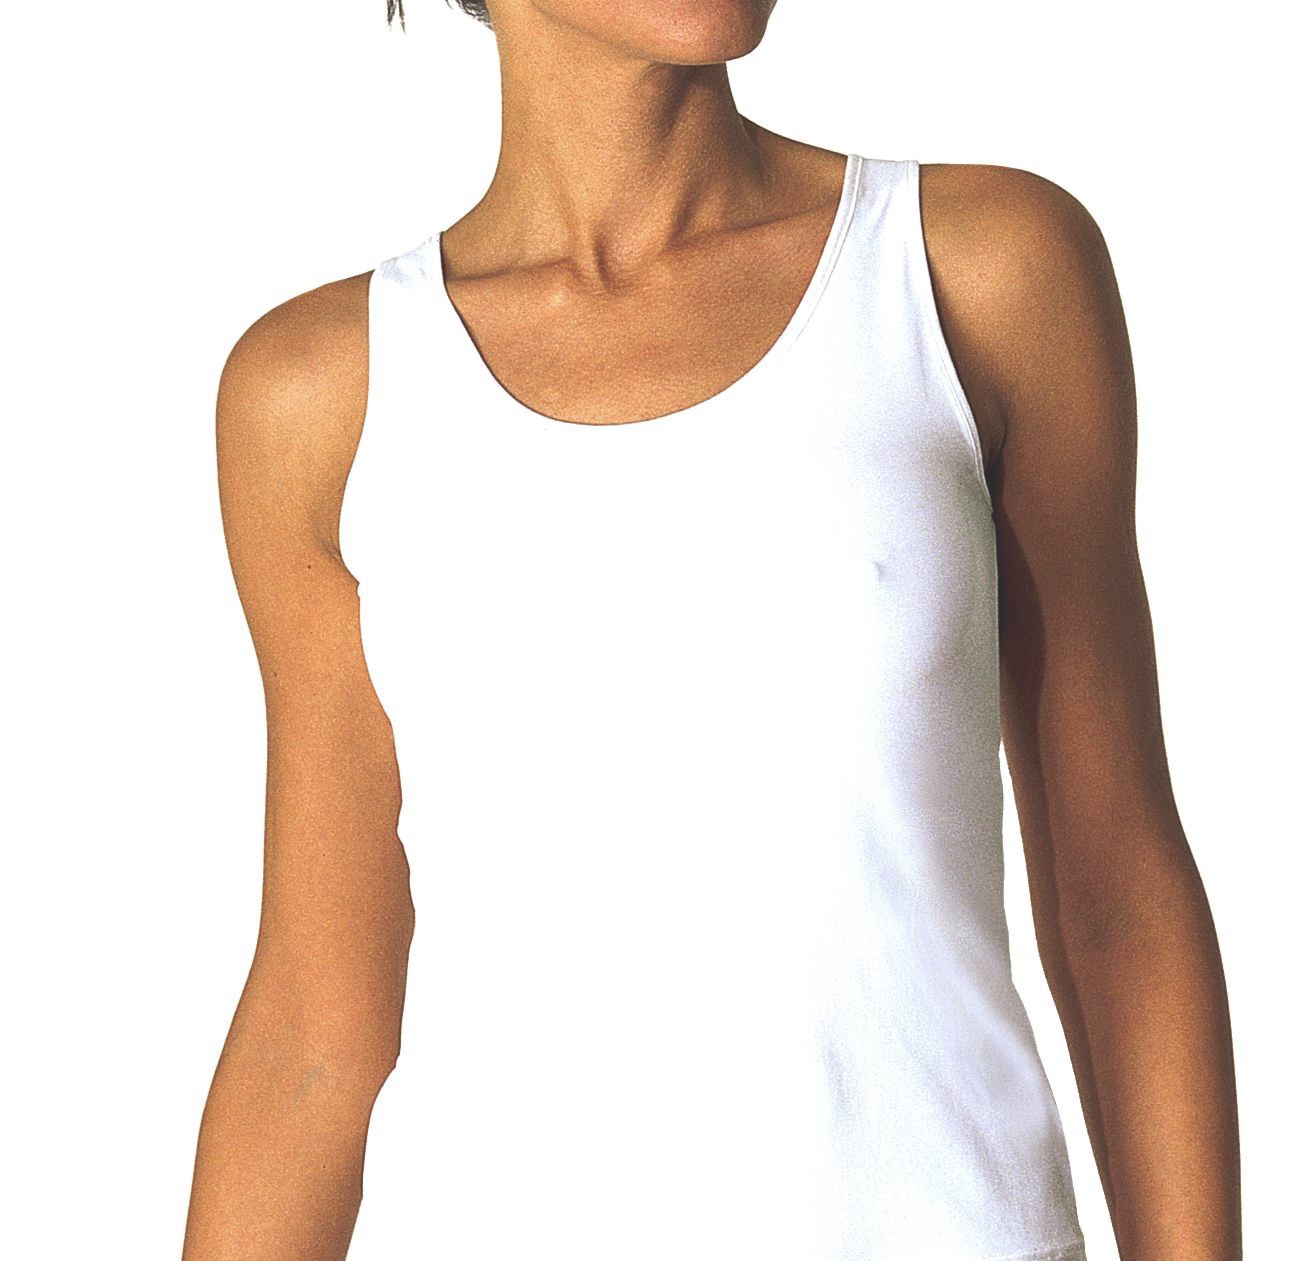 AVET 7505 ✅ Camiseta interior de mujer con bordado